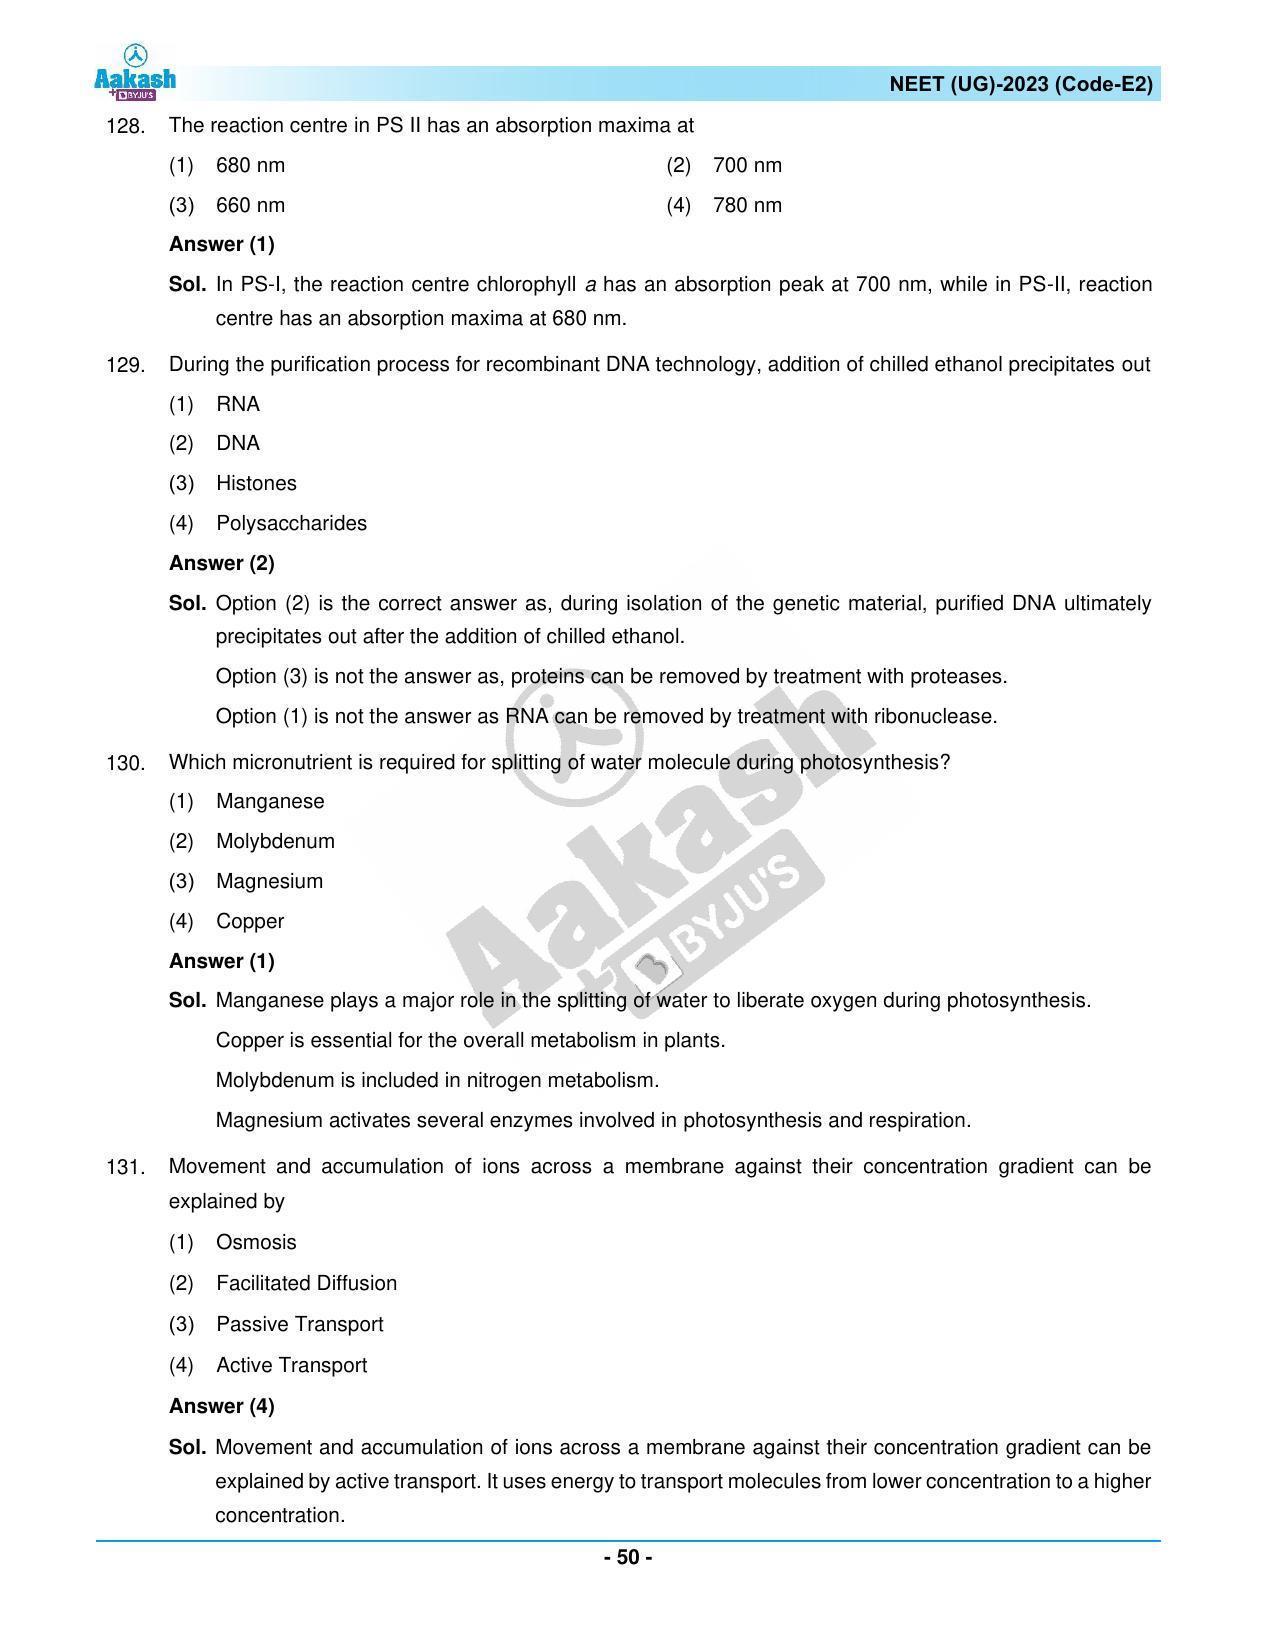 NEET 2023 Question Paper E2 - Page 50